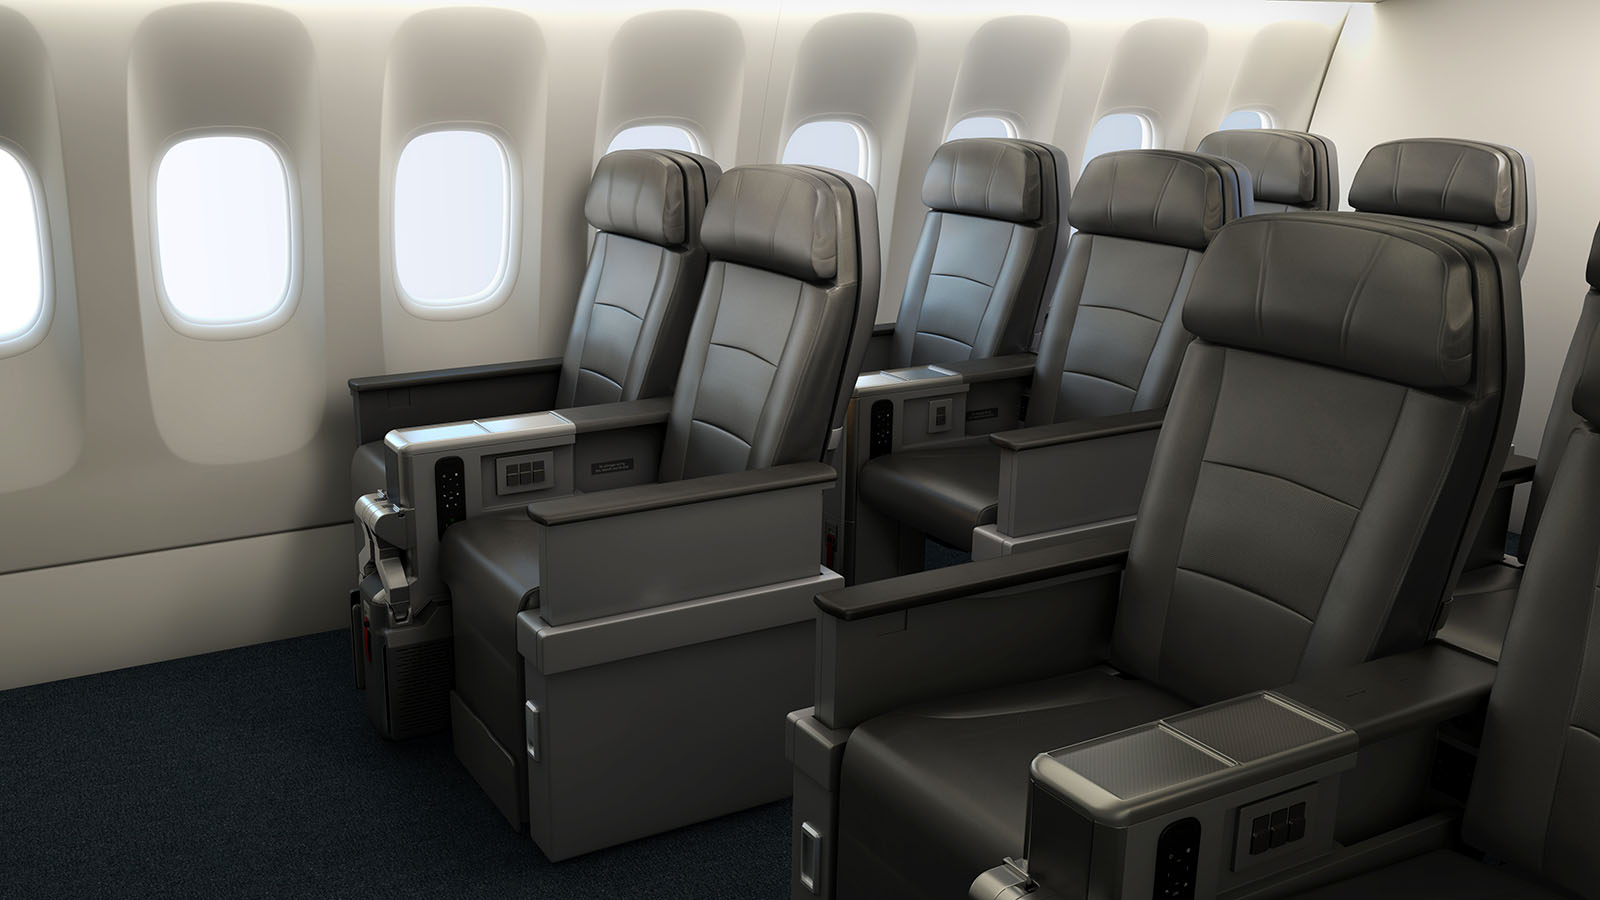 American Airlines Premium Economy seat